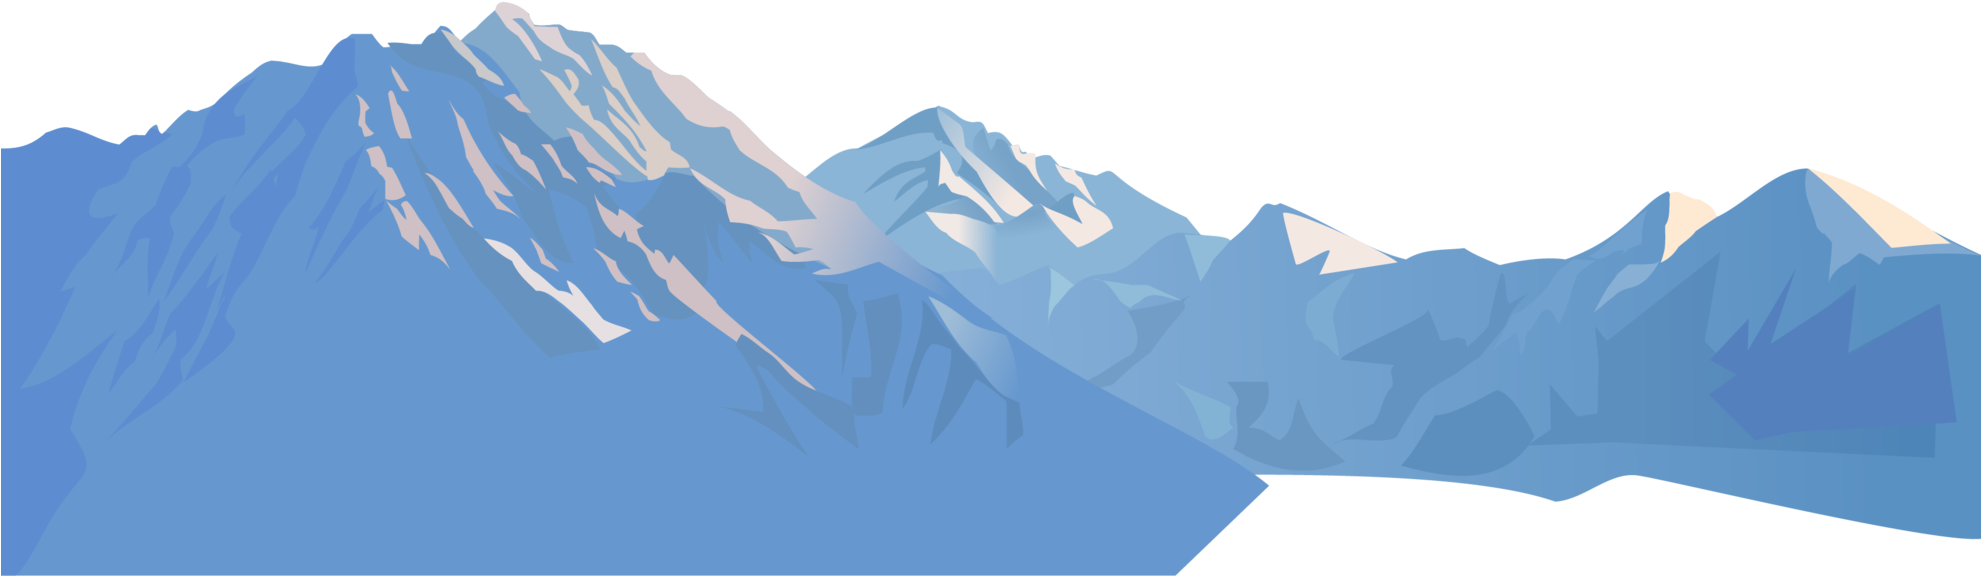 Hd hills mountains transparent. Glacier clipart background